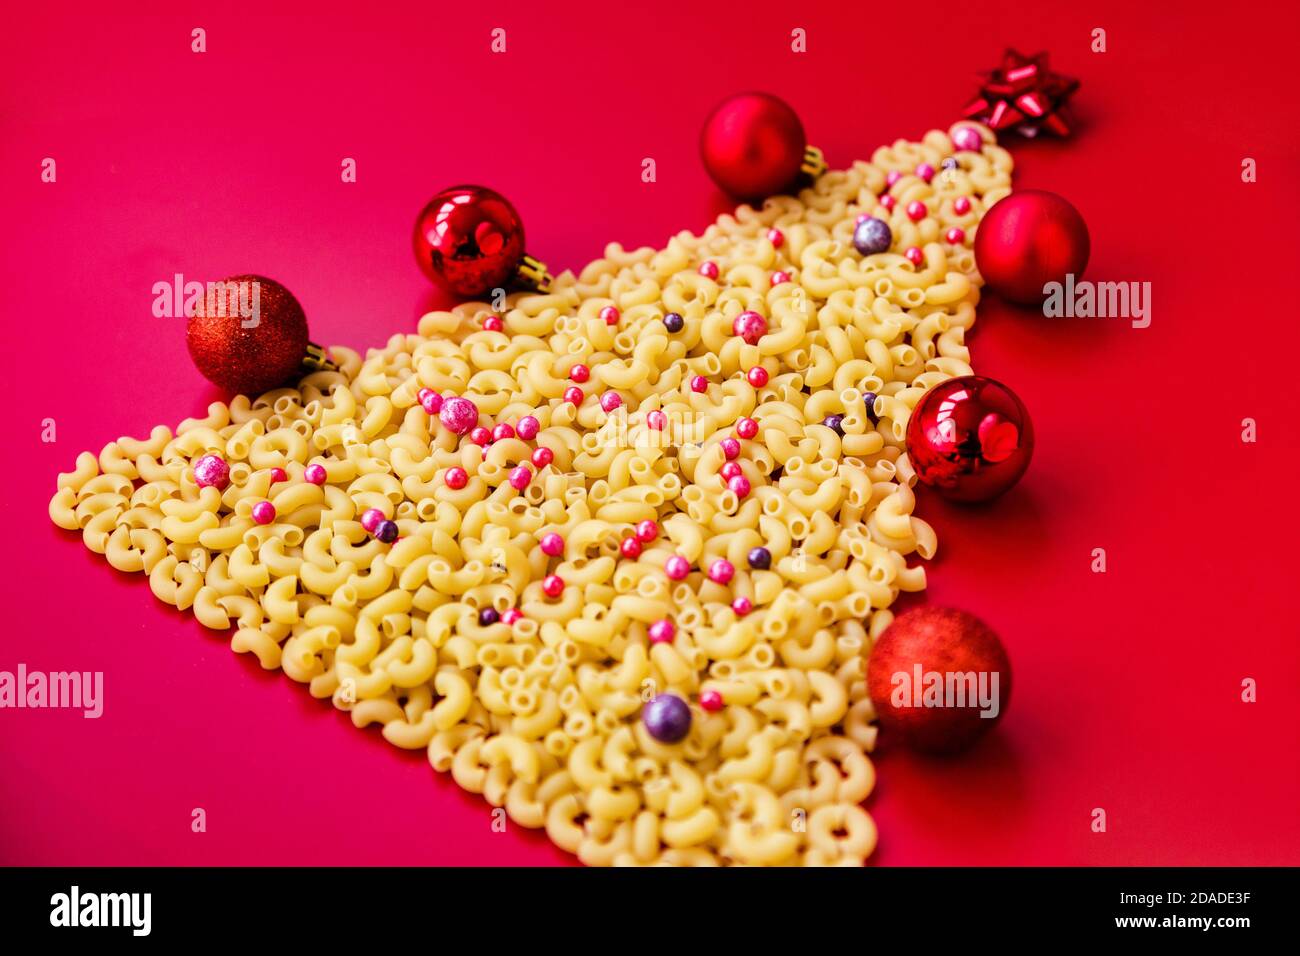 Arbre de Noël fait de pâtes italiennes crues avec des boules rouges isolées sur fond rouge.Concept vacances d'hiver Banque D'Images